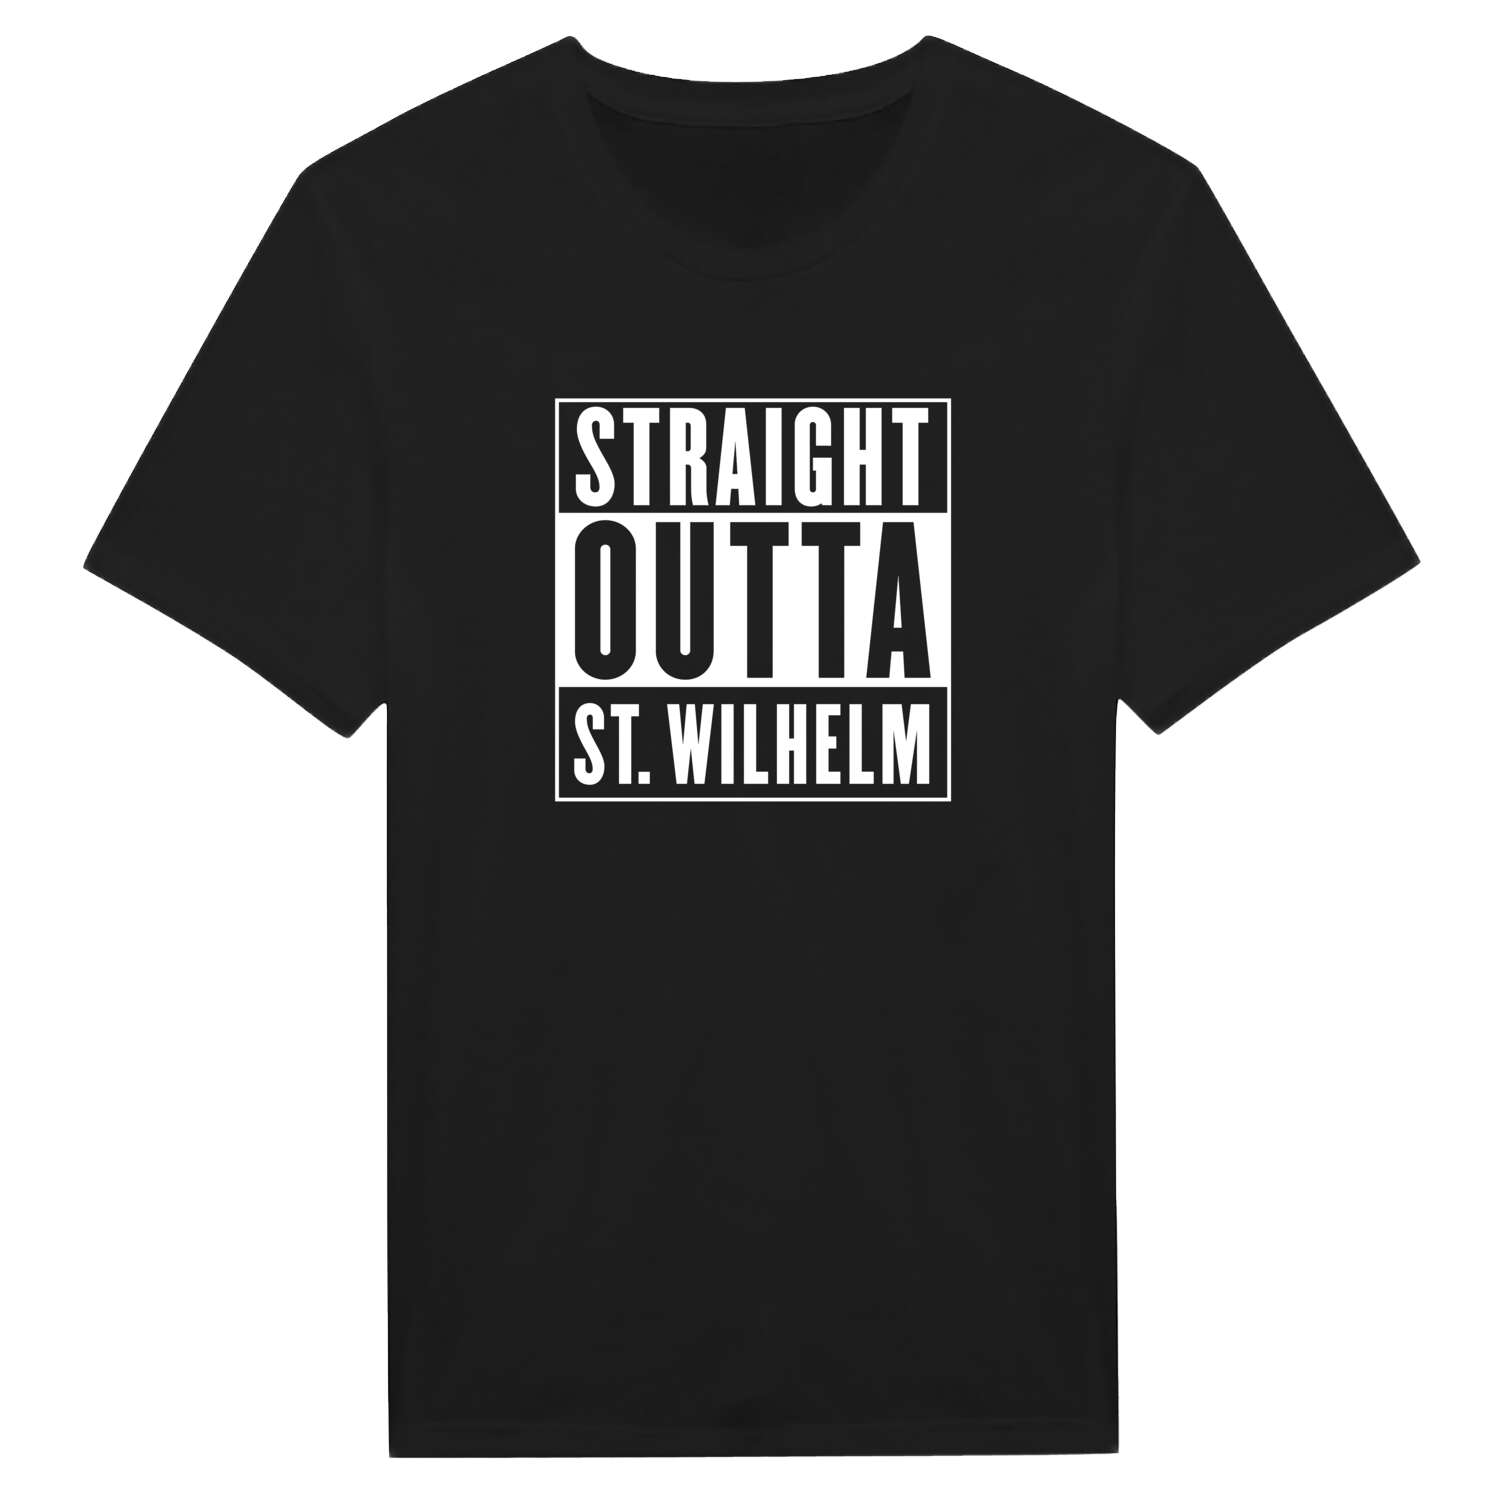 St. Wilhelm T-Shirt »Straight Outta«